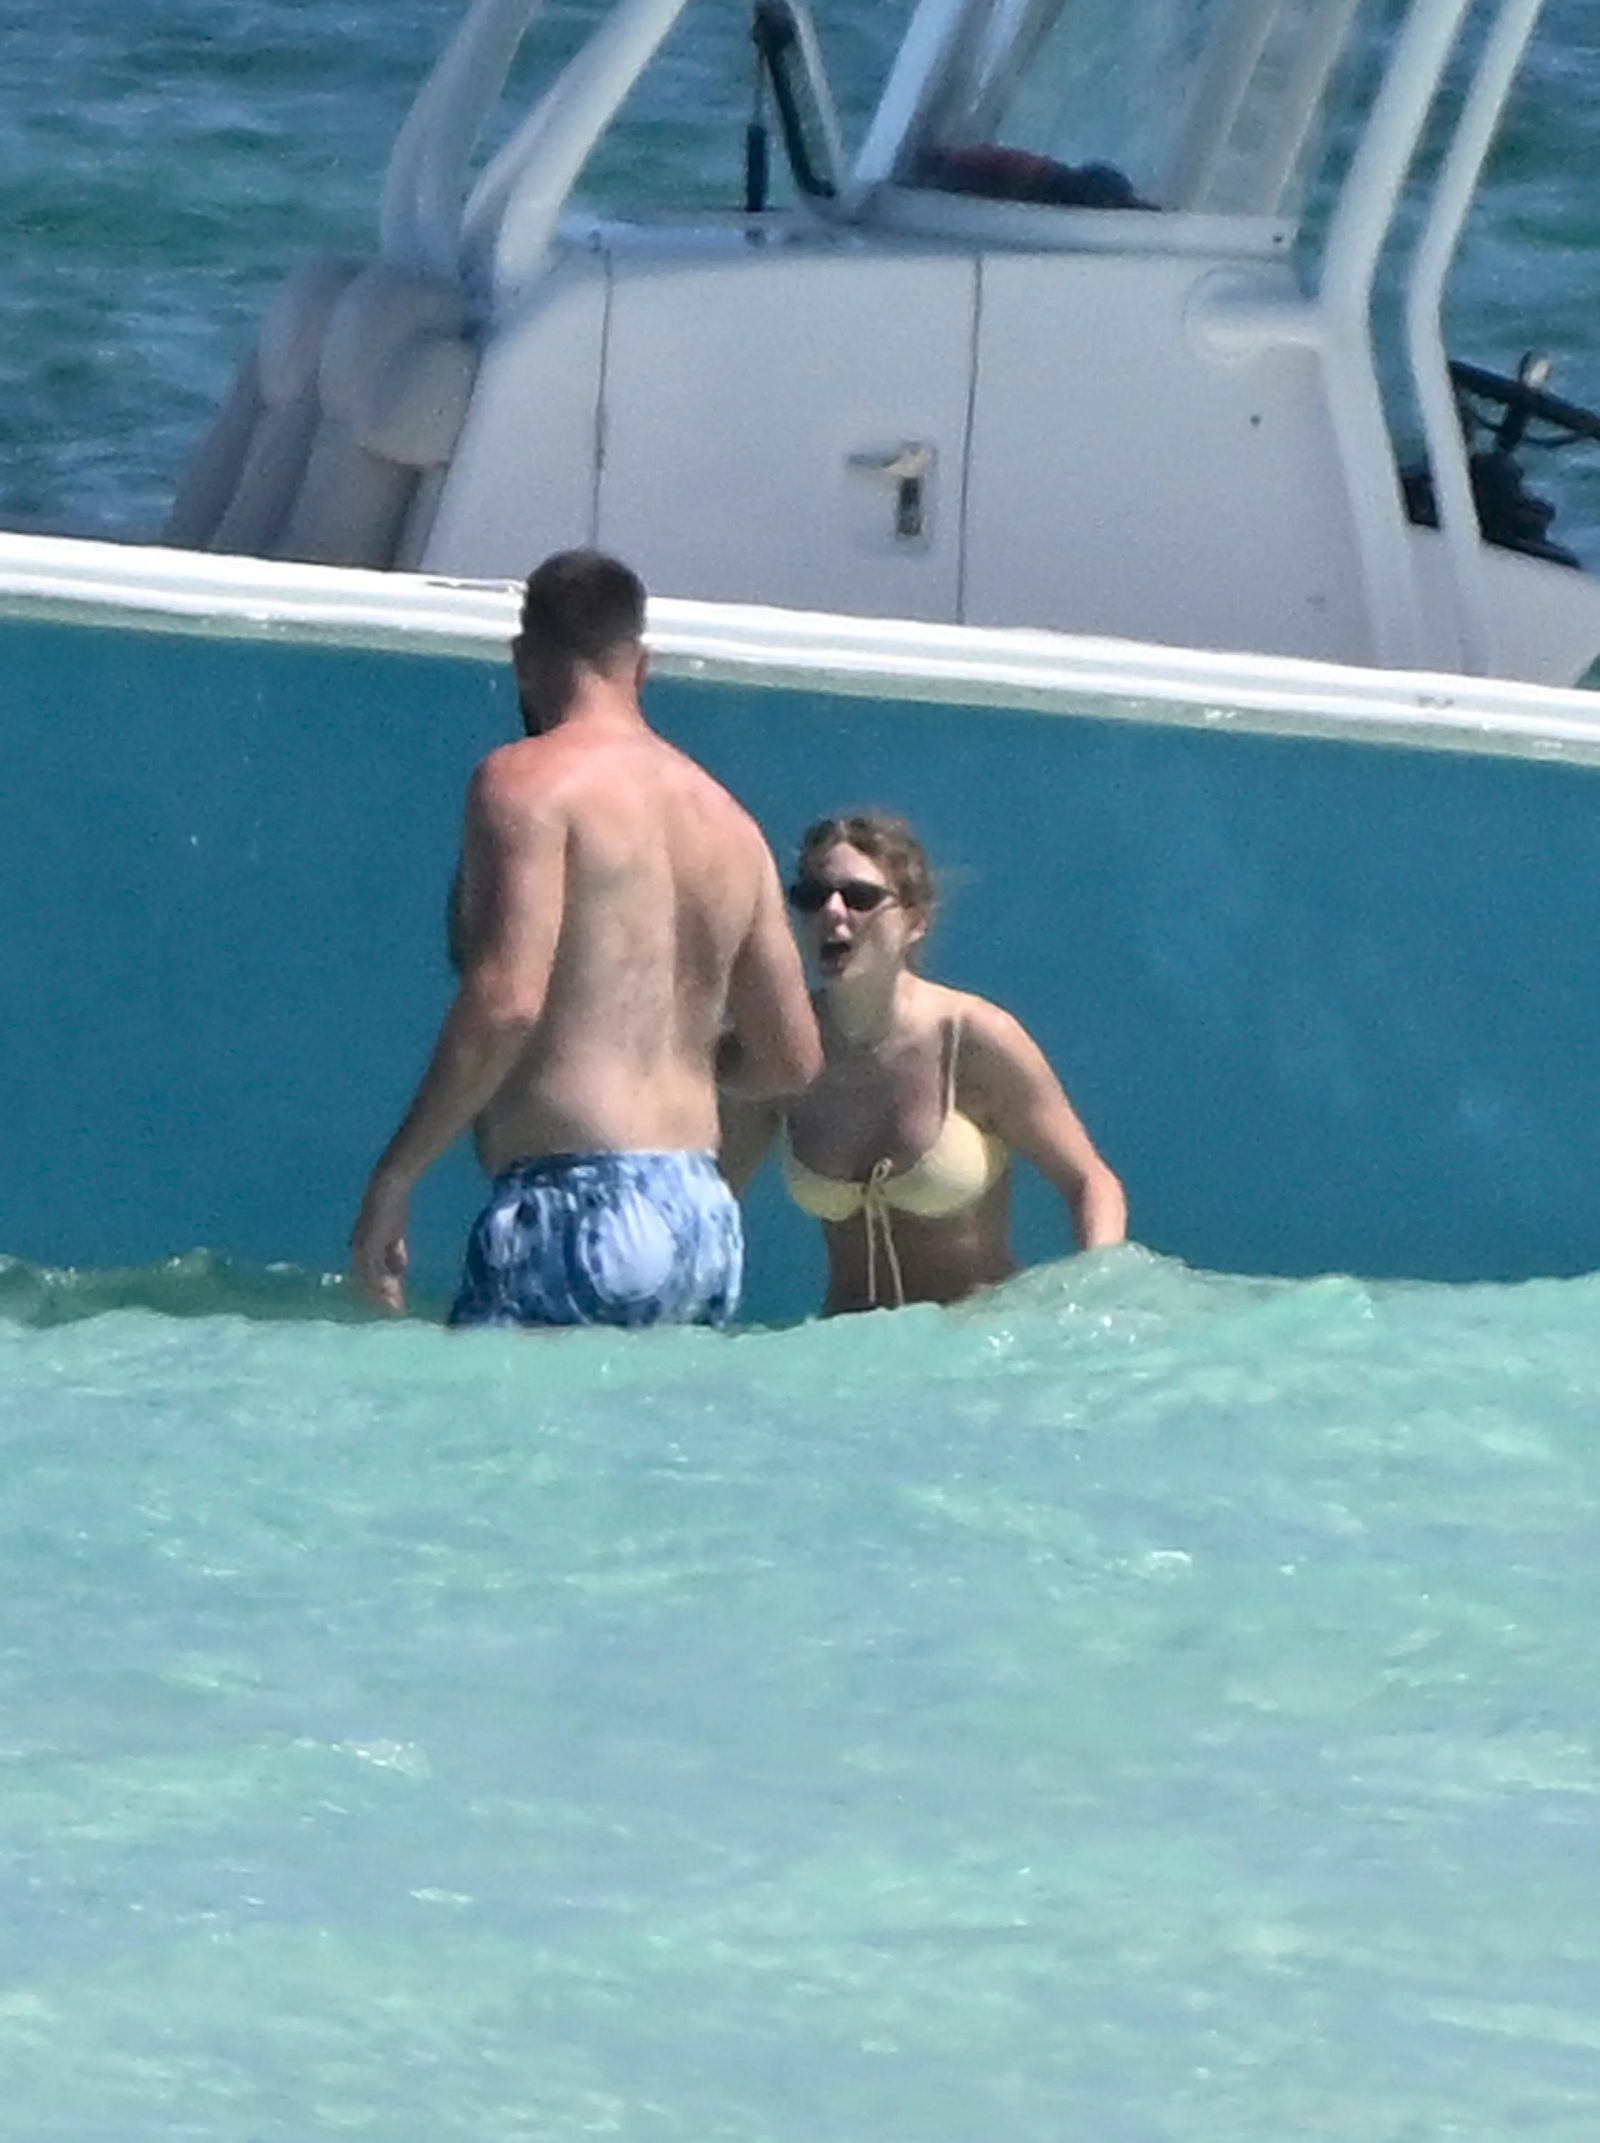 Папарацци последили за интимными забавами Тейлор Свифт и Трэвиса Кейси на Багамах. Топ фото Тейлор Свифт в бикини